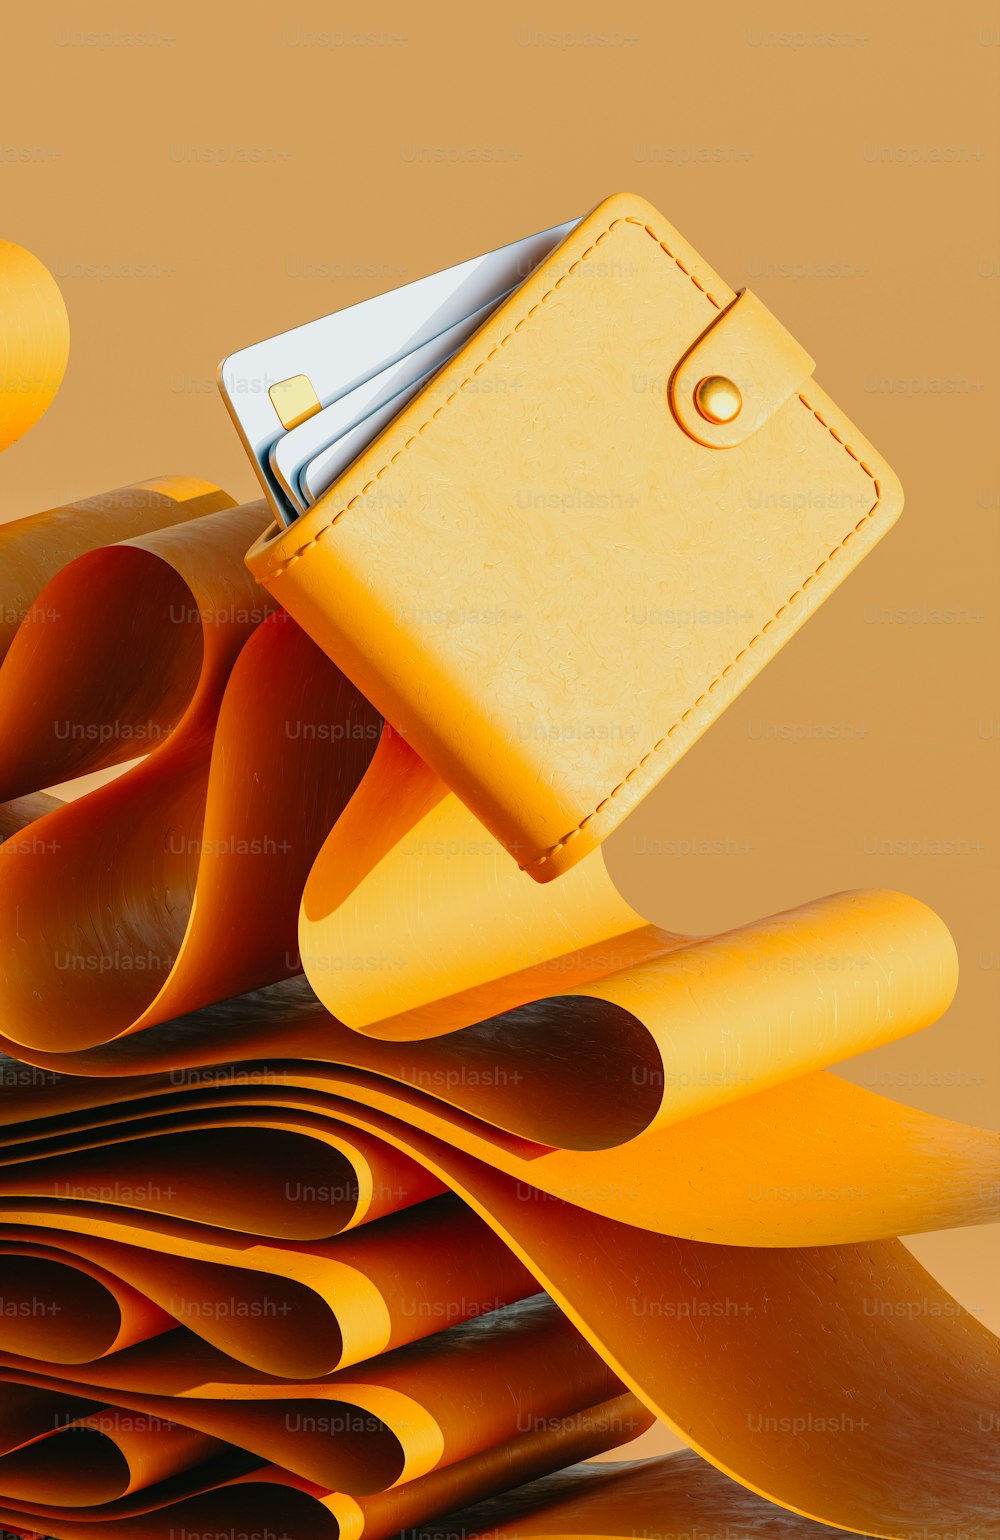 Ein Stapel gelber Papiere, aus dem eine Brieftasche herausragt